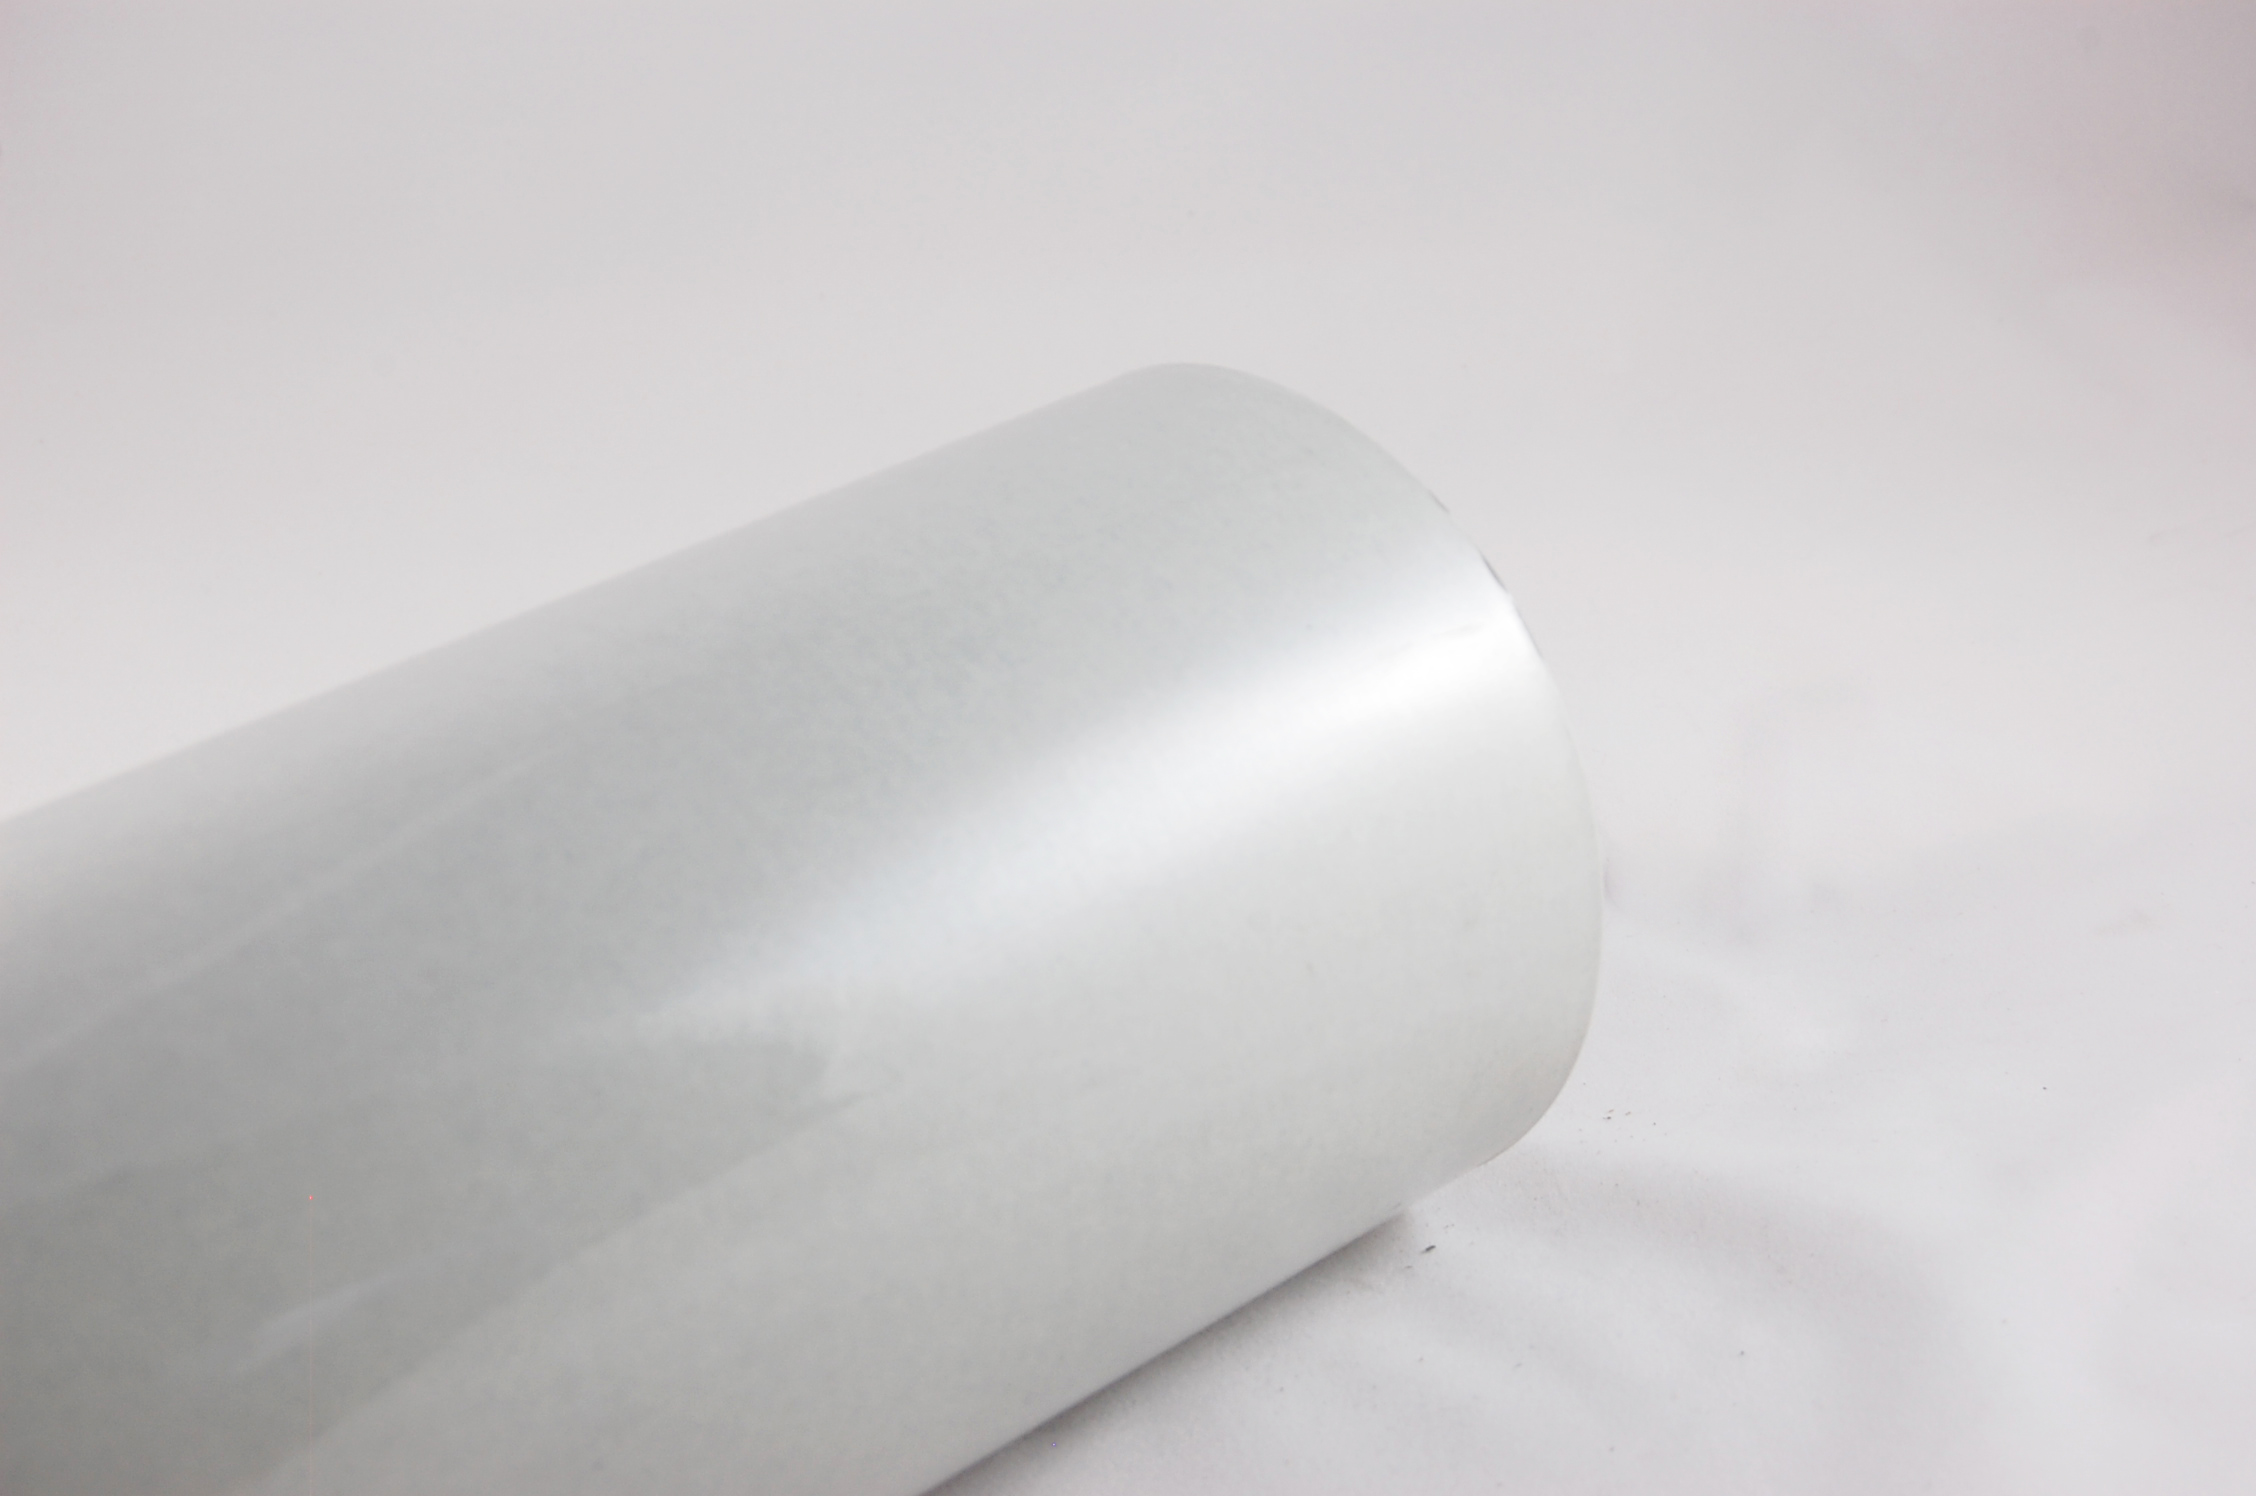 Acuflex® RMR 5-3-5 .013" thick 3-Ply RAG/MYLAR/RAG Flexible Laminate 130°C, gray, 36" wide x  250 SY roll